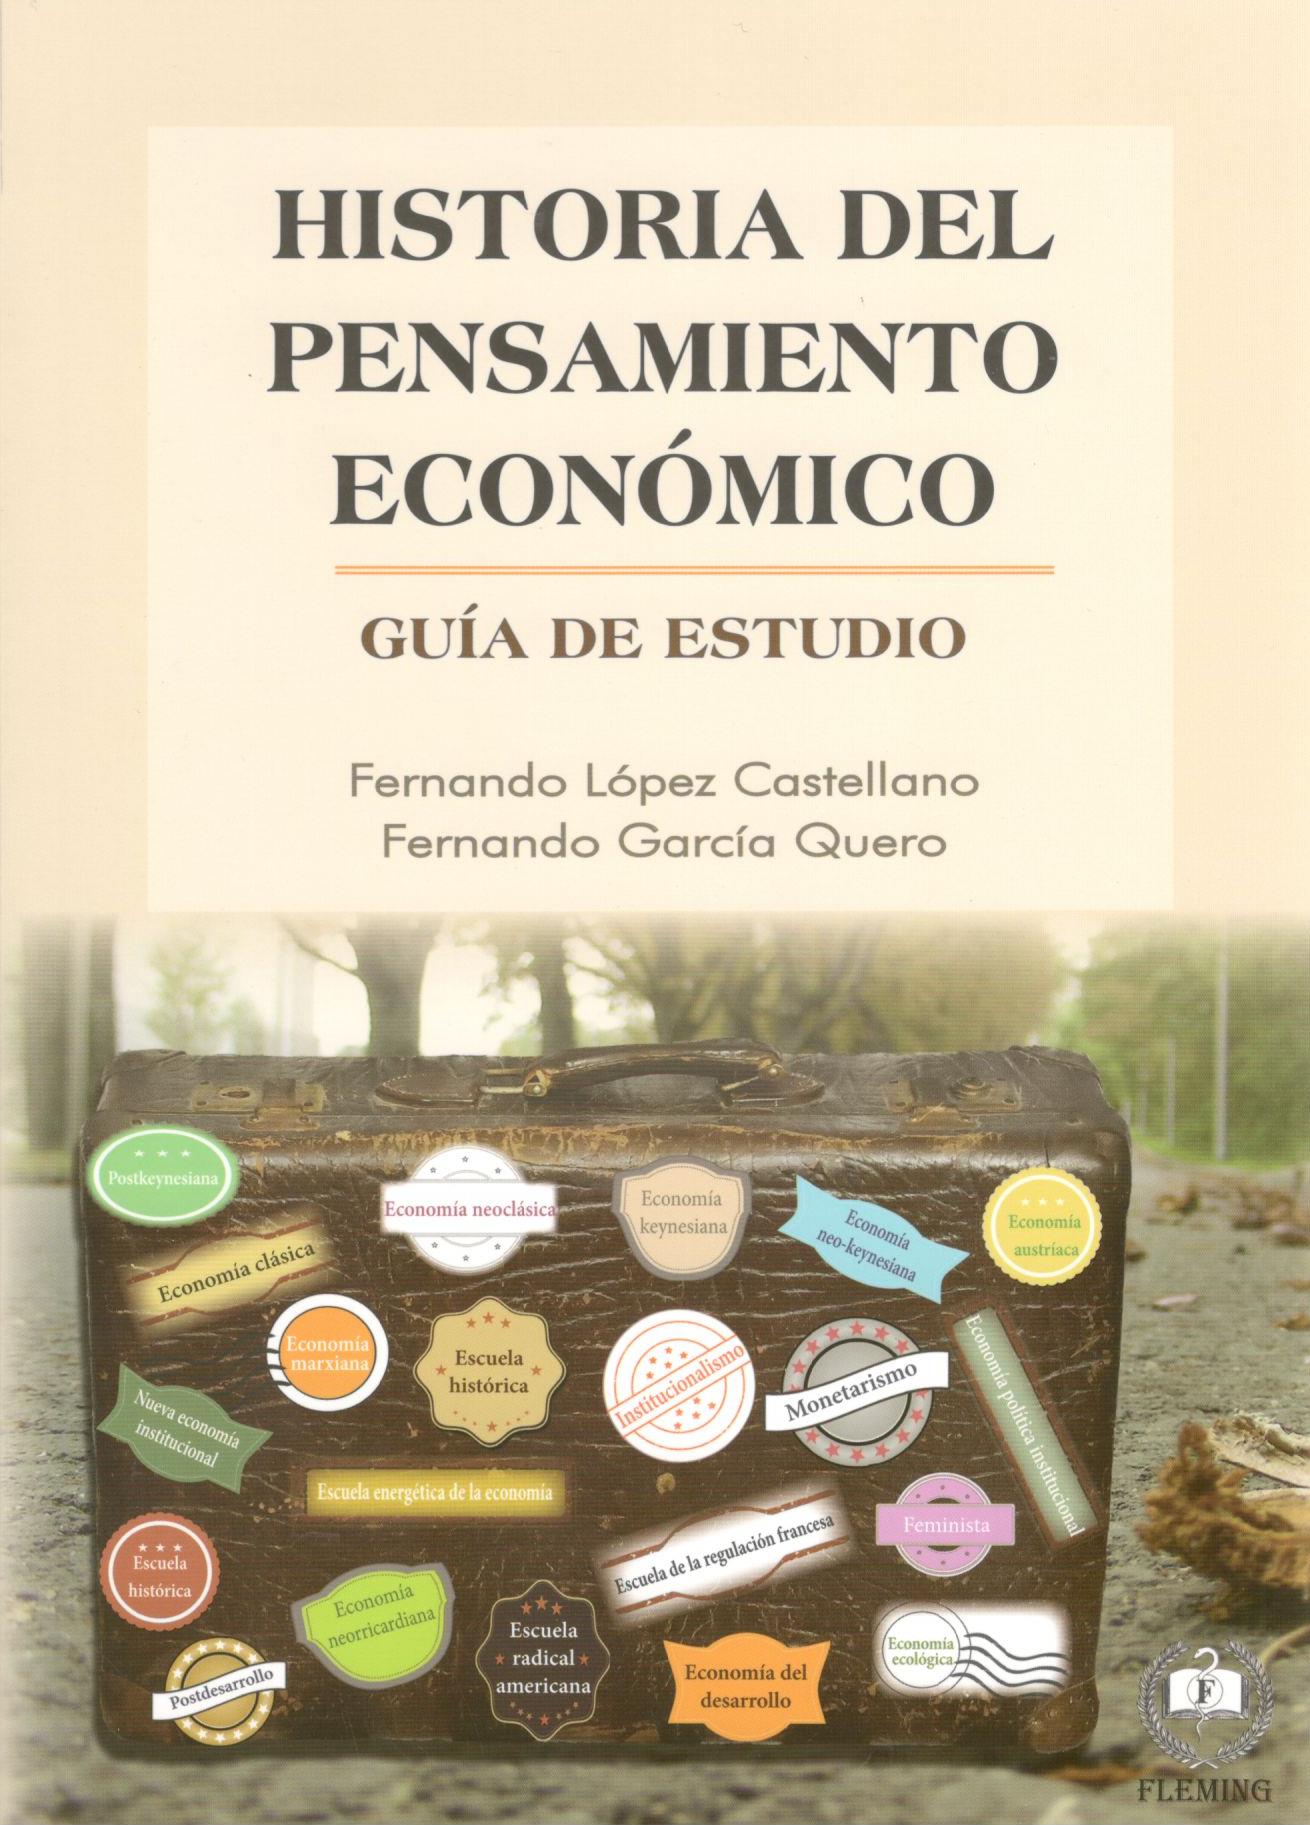 HISTORIA DEL PENSAMIENTO ECONOMICO. Guia de estudio